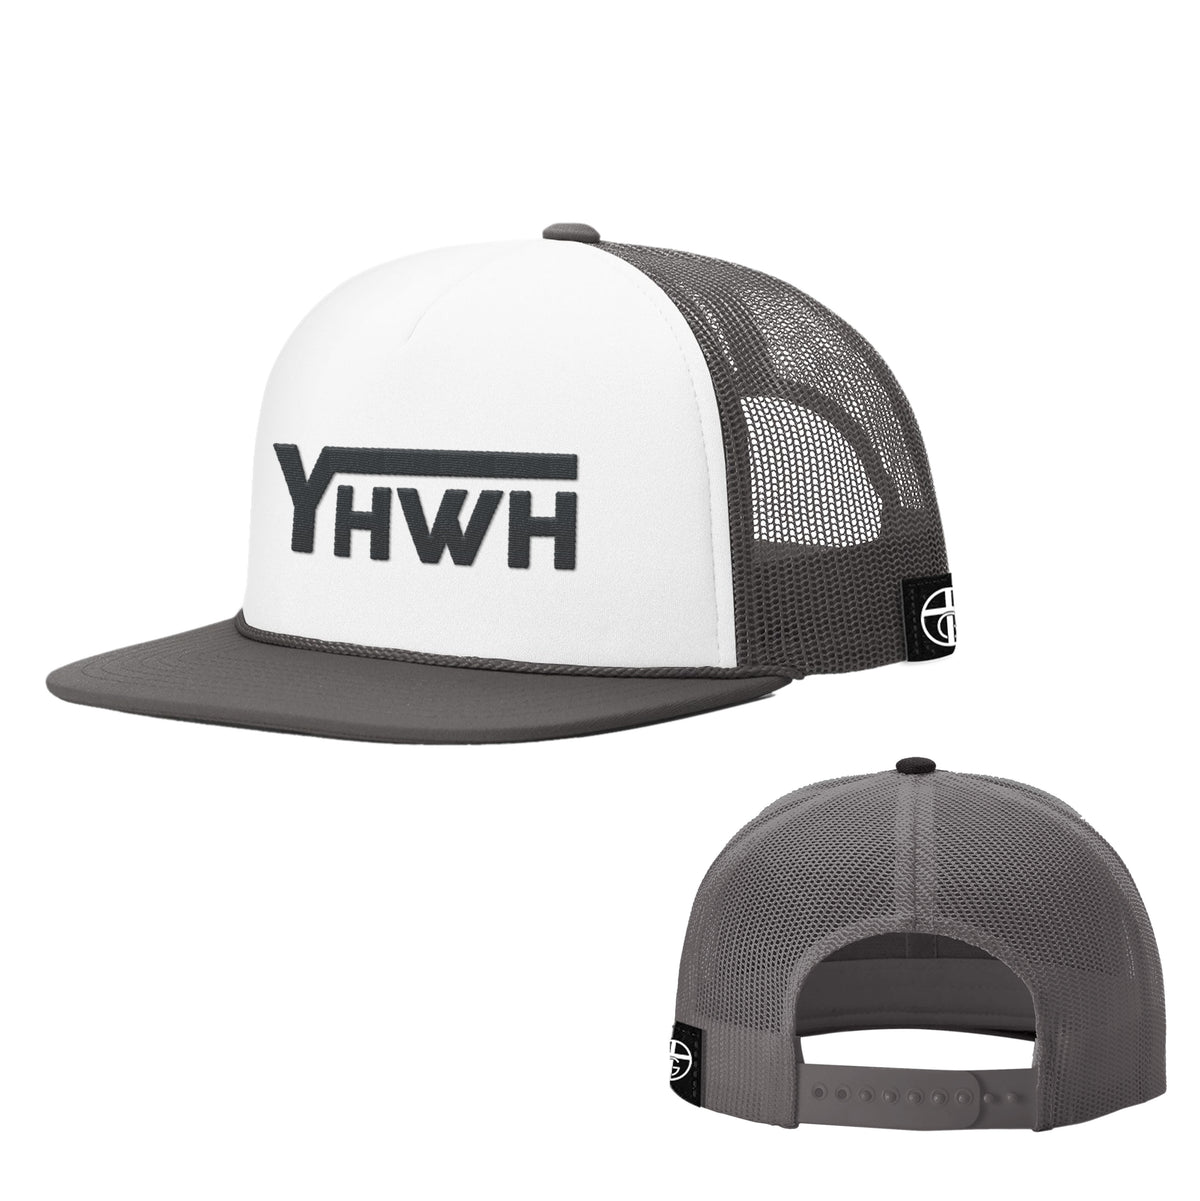 YHWH Foam Trucker Hats